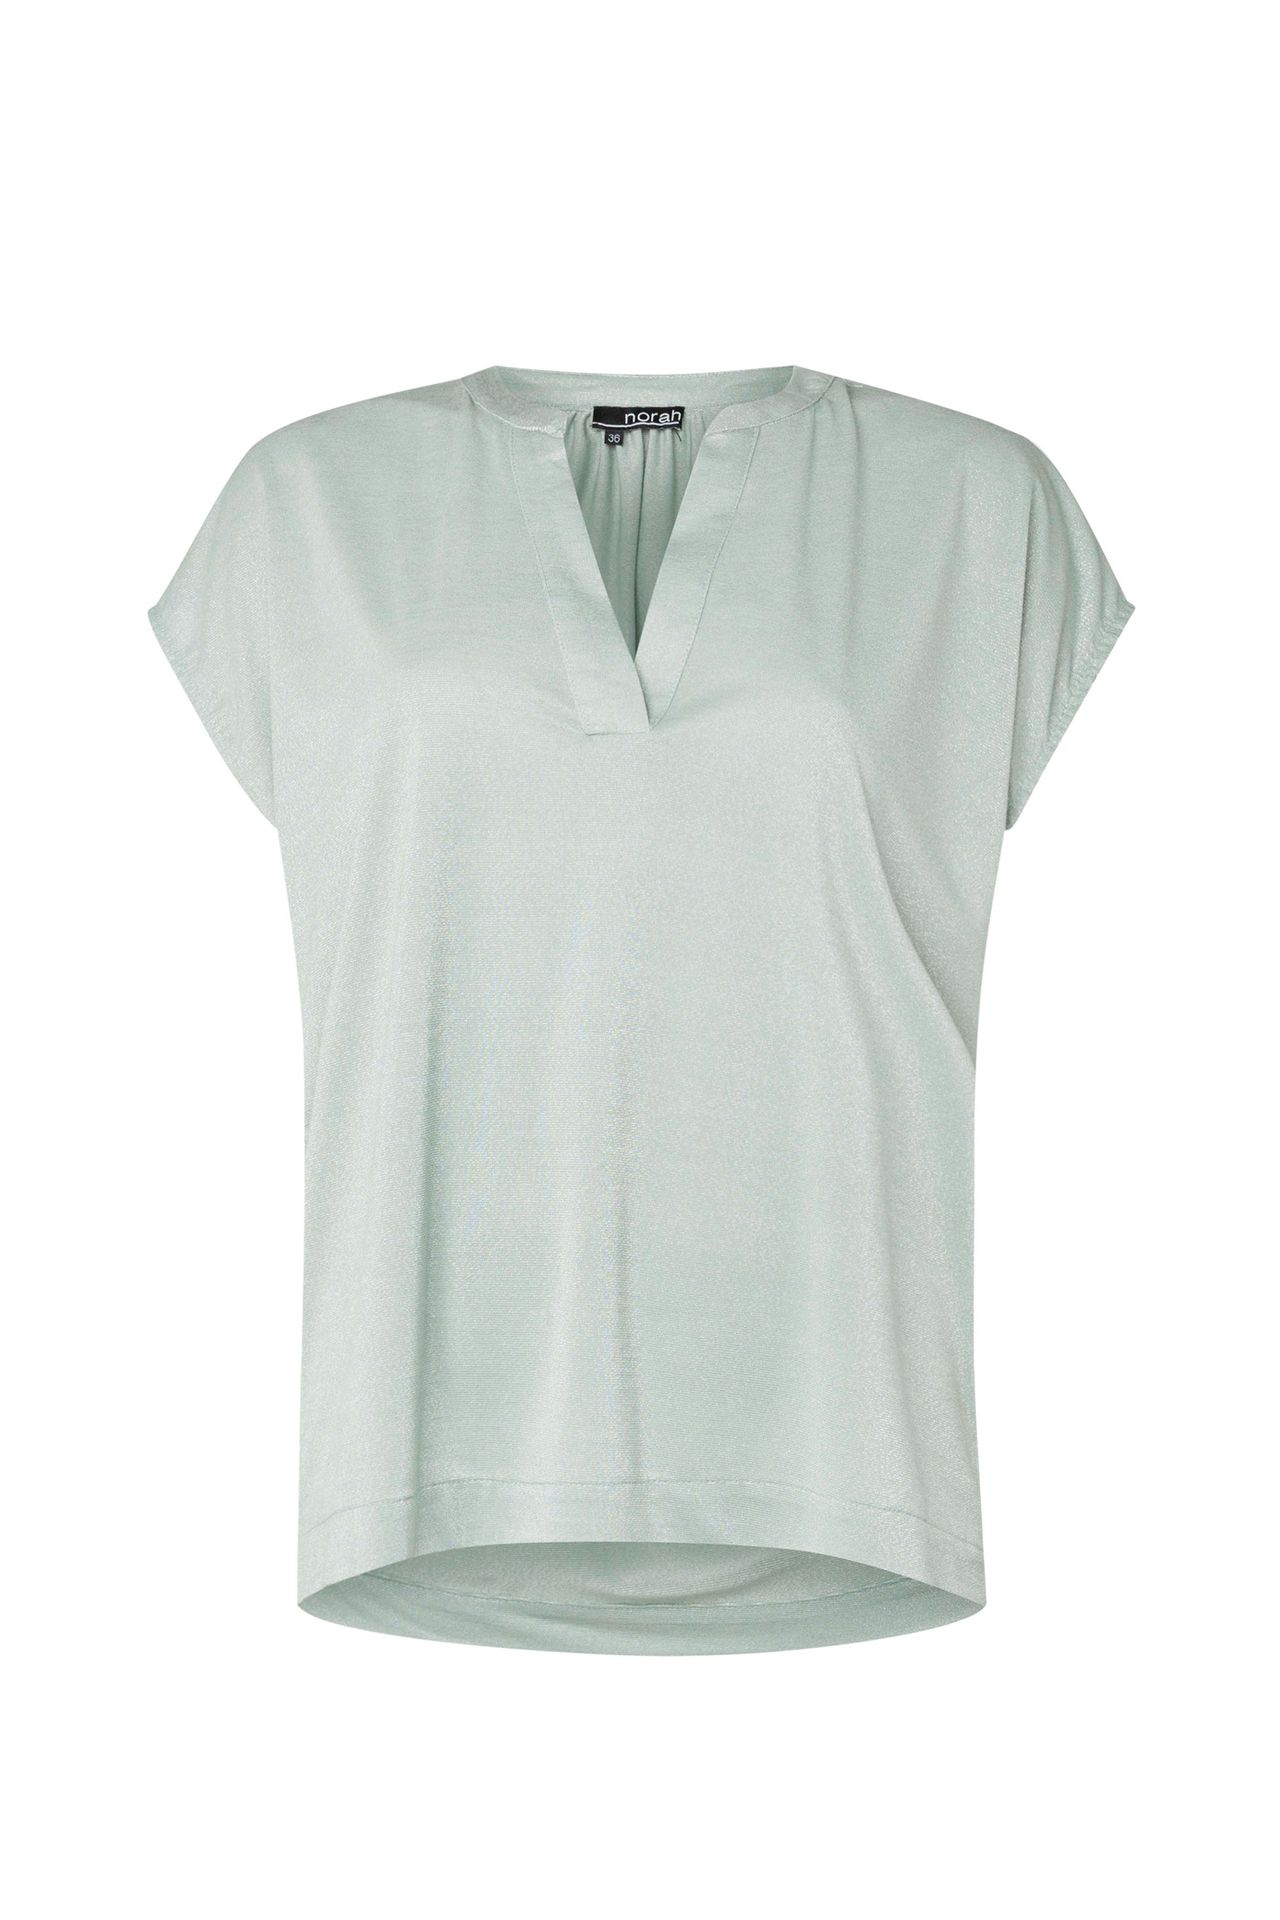 Norah Lichtgroen shirt grey green 213666-053